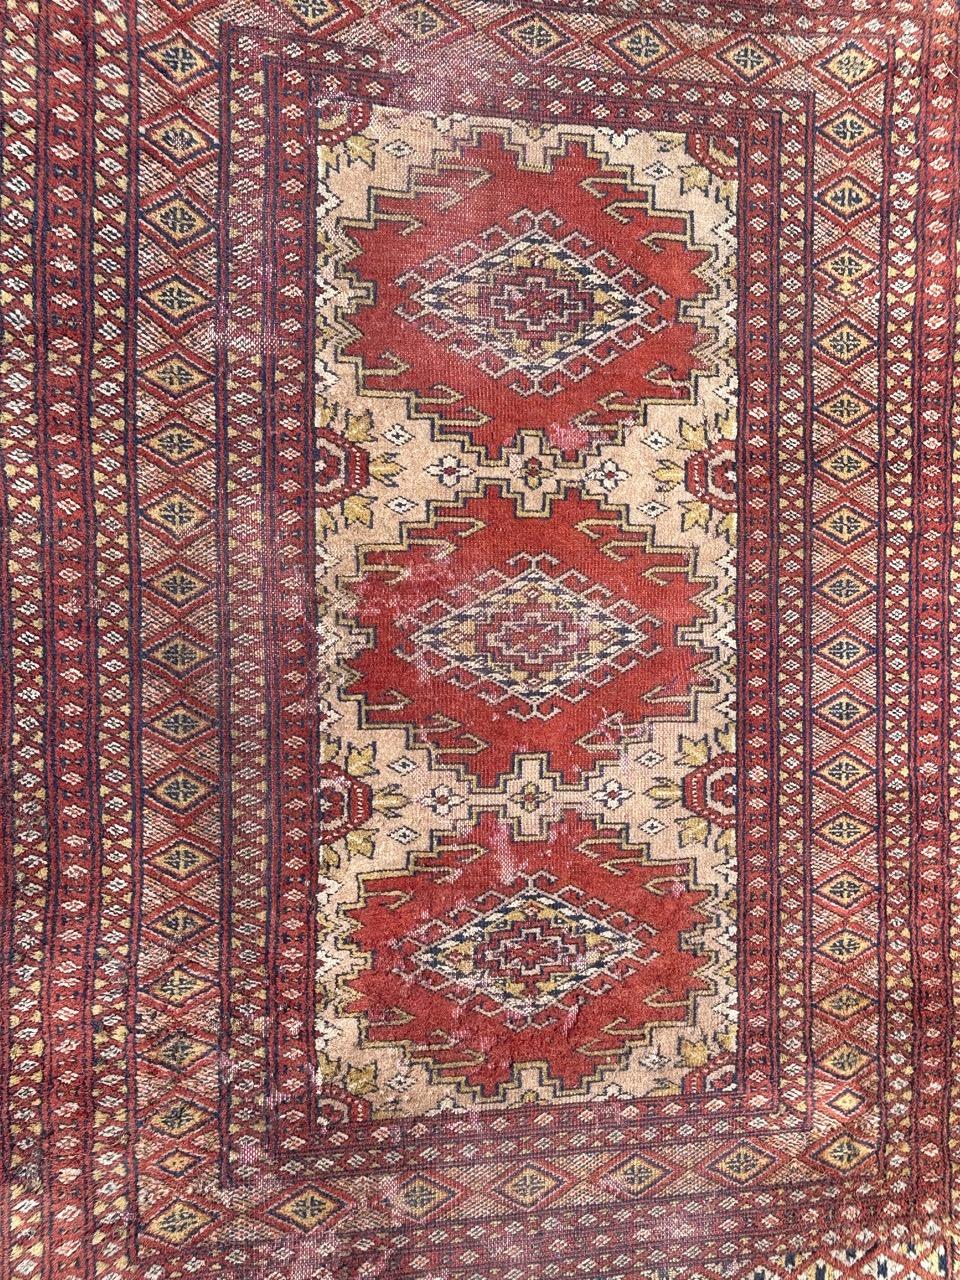 Magnifique tapis pakistanais vintage avec de jolis motifs géométriques dans le style des tapis turkmènes et de belles couleurs, entièrement noué à la main avec de la laine sur une base de coton. 
Vêtements d'uniforme 

✨✨✨
